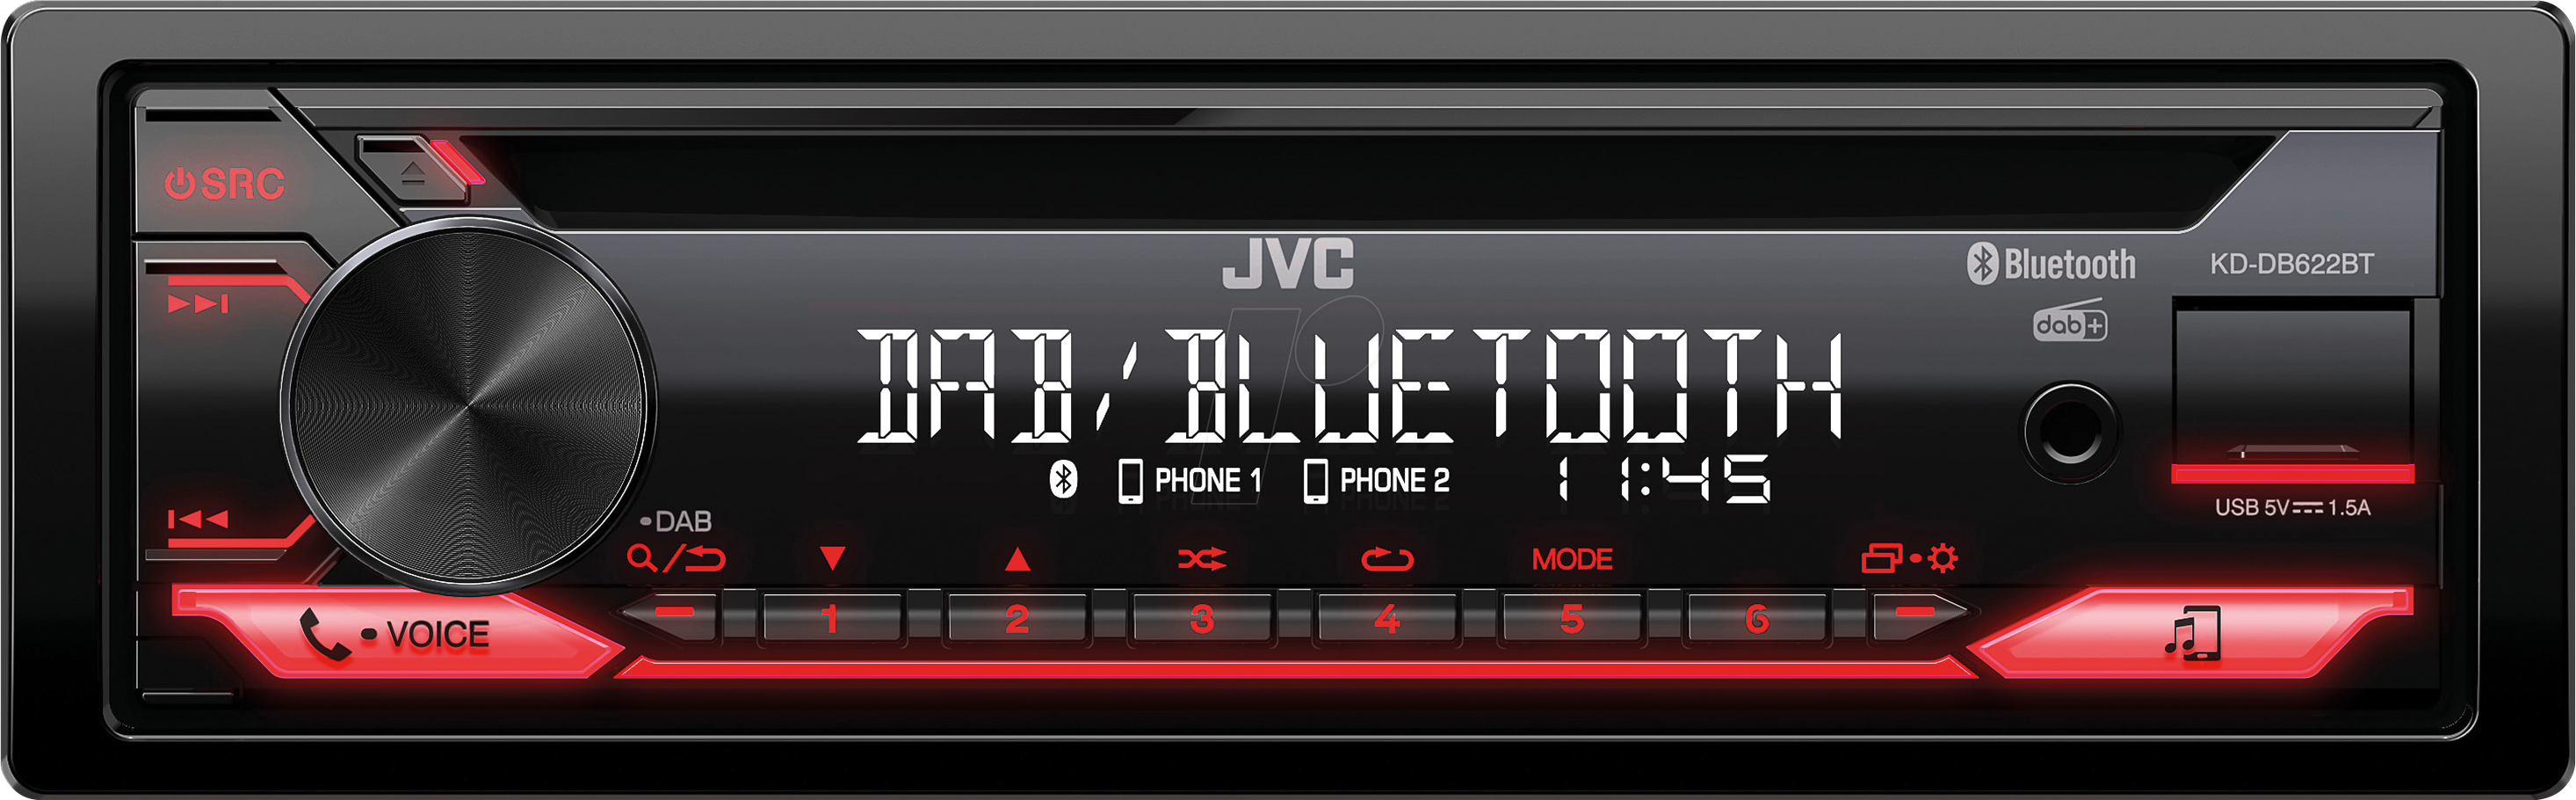 JVC KD-DB622BT - Autoradio, CD, DAB+, BT, USB, 50 W